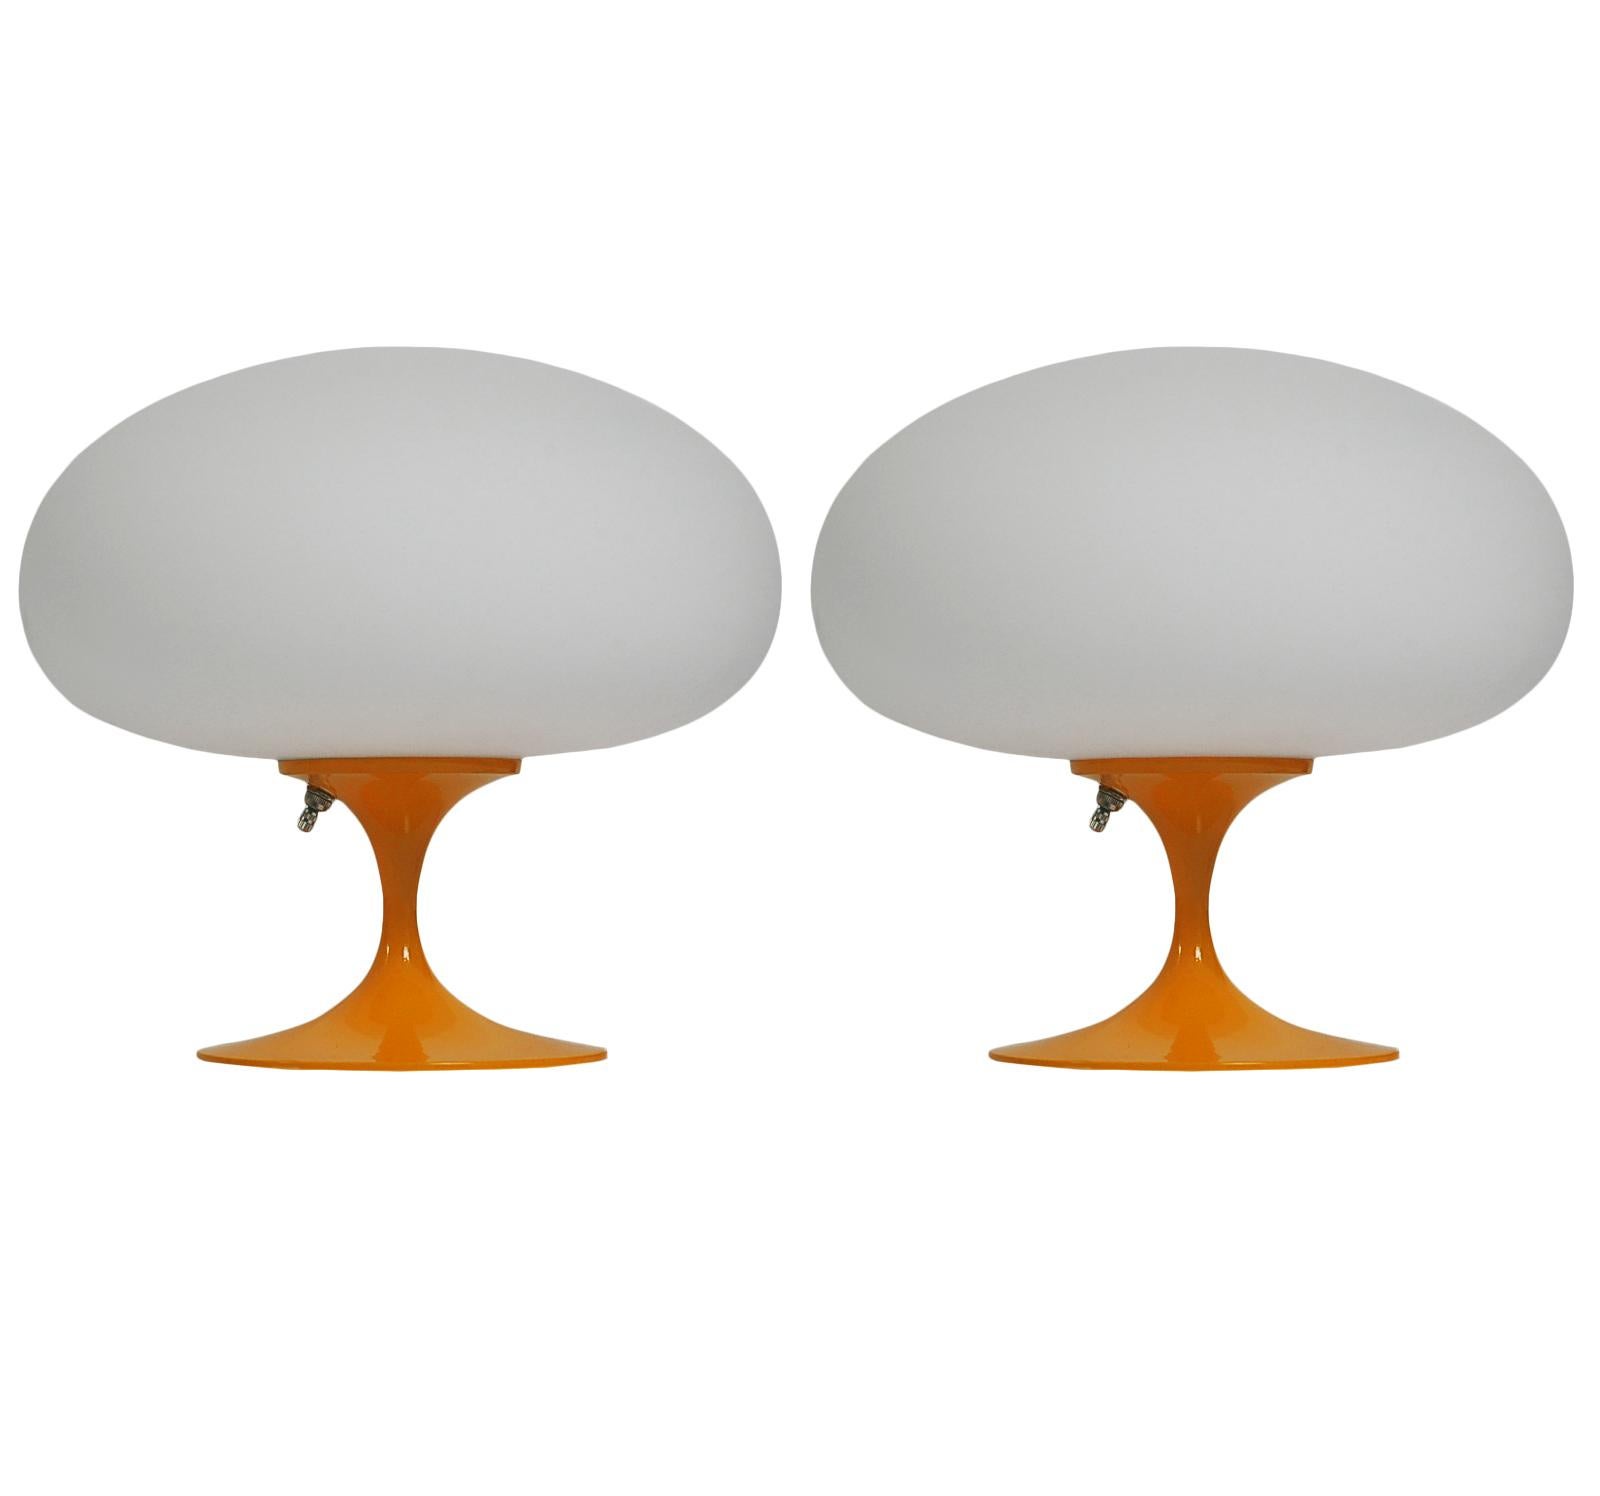 Ein wunderschönes Paar passender Tischlampen in Tulpenform nach Laurel Lamp Company. Diese verfügen über einen orangefarbenen pulverbeschichteten Aluminiumguss-Sockel mit mundgeblasenen mattierten weißen Glasschirmen. Der Preis beinhaltet das Paar